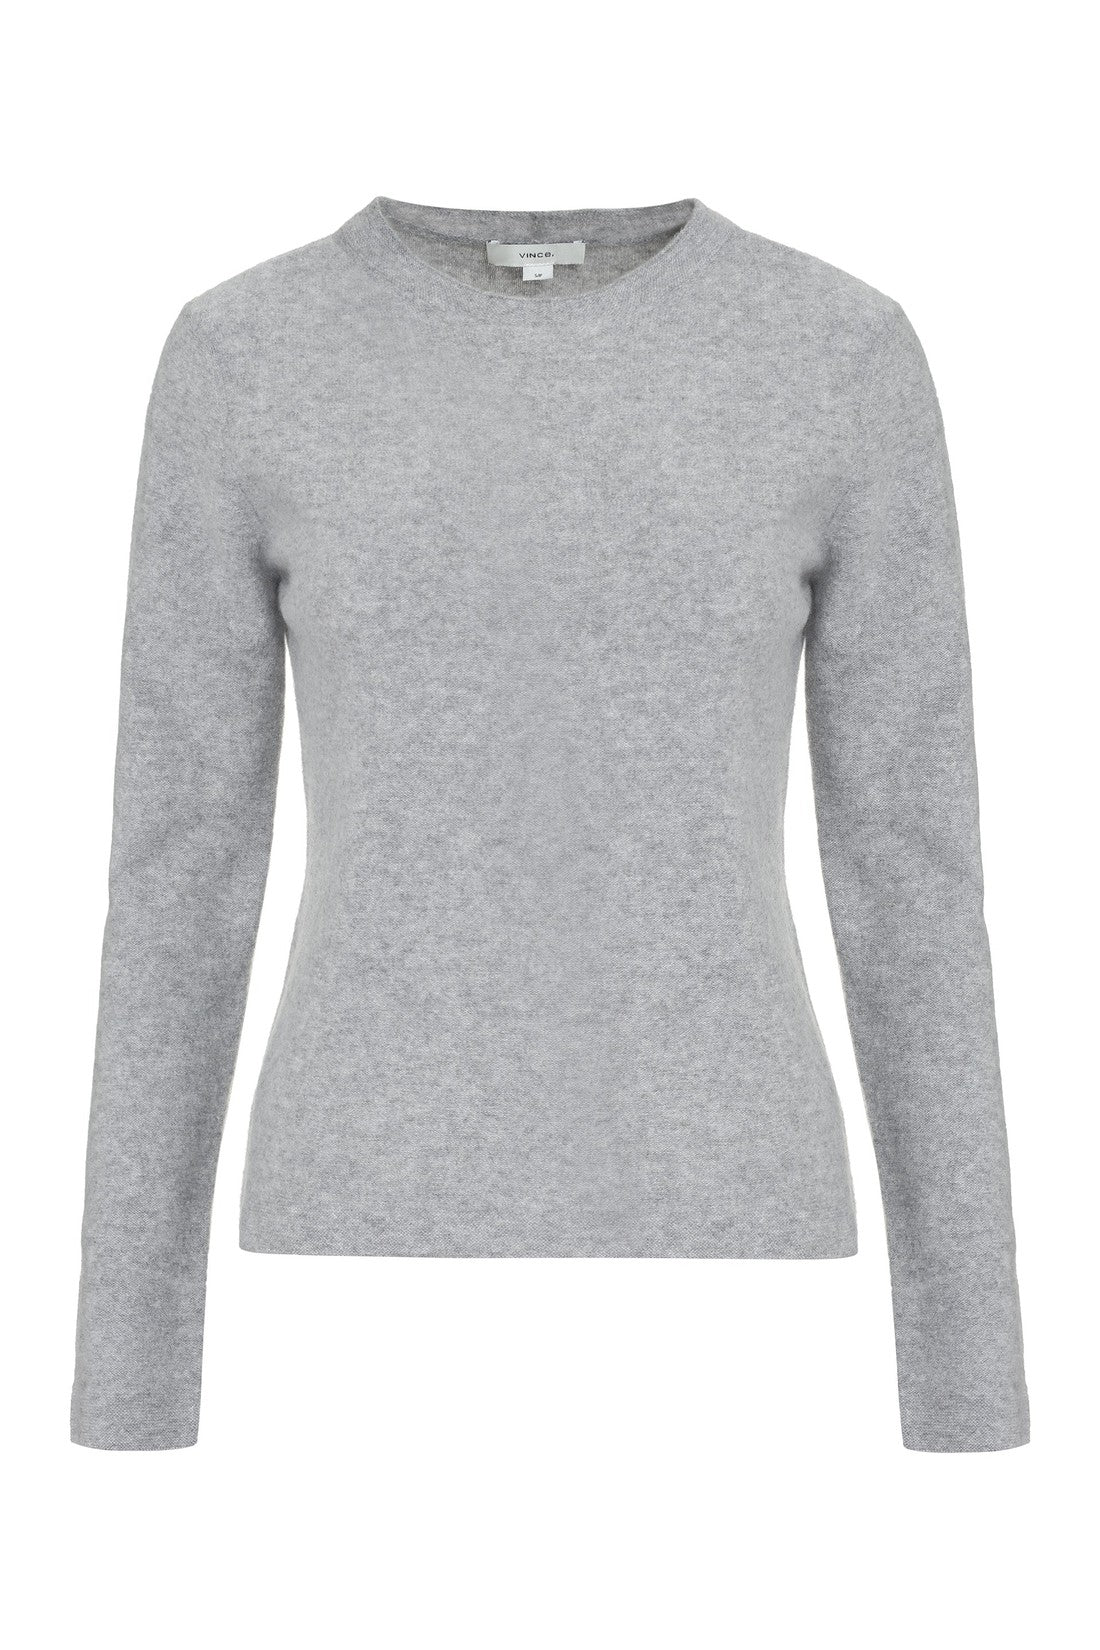 Vince-OUTLET-SALE-Cashmere sweater-ARCHIVIST